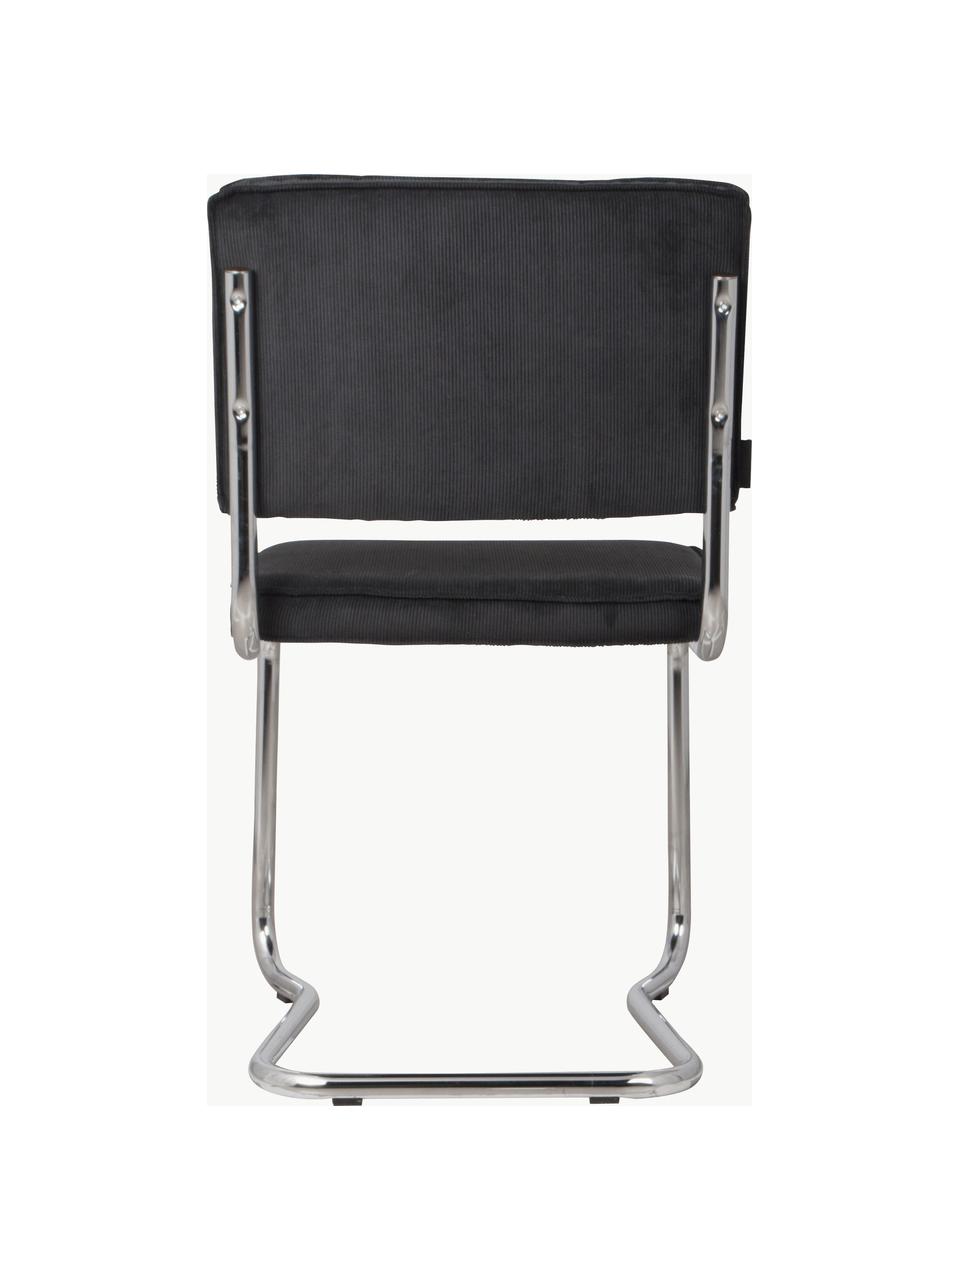 Manšestrová konzolová židle Kink, Černá, stříbrná, Š 48 cm, H 48 cm